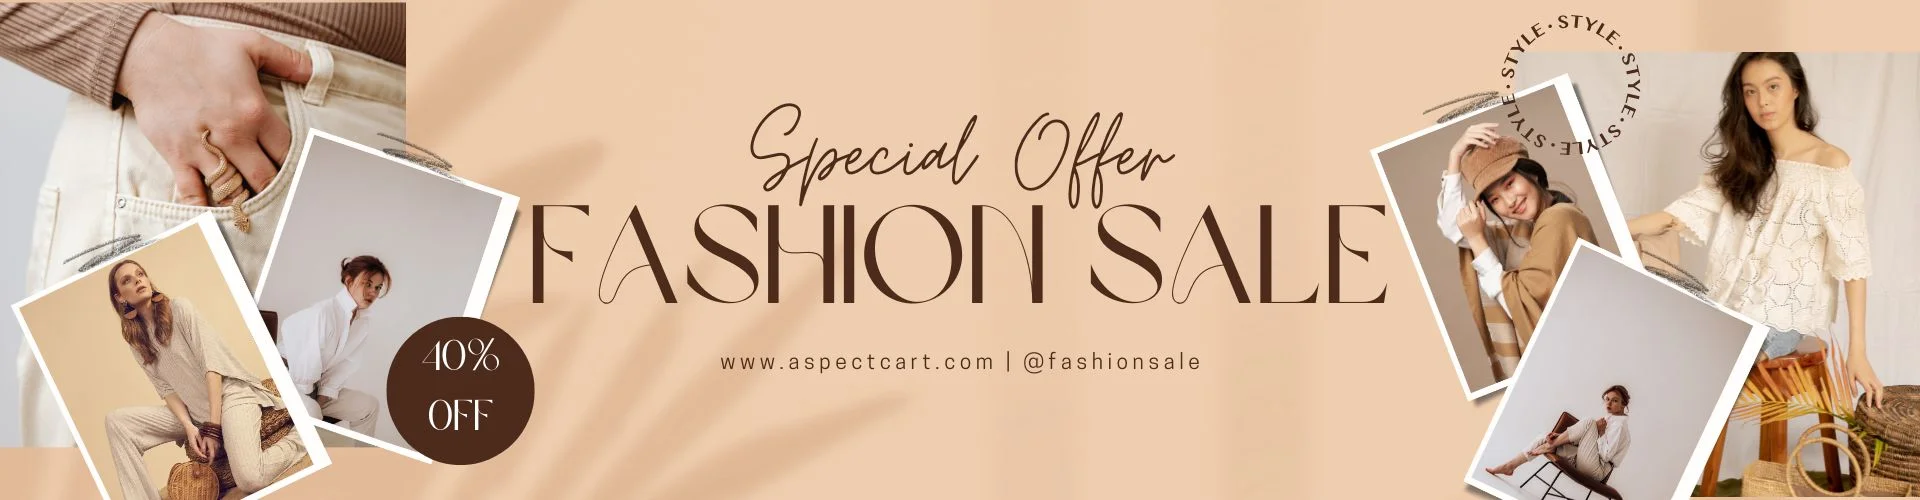 Banner de oferta especial para una tienda de moda en línea